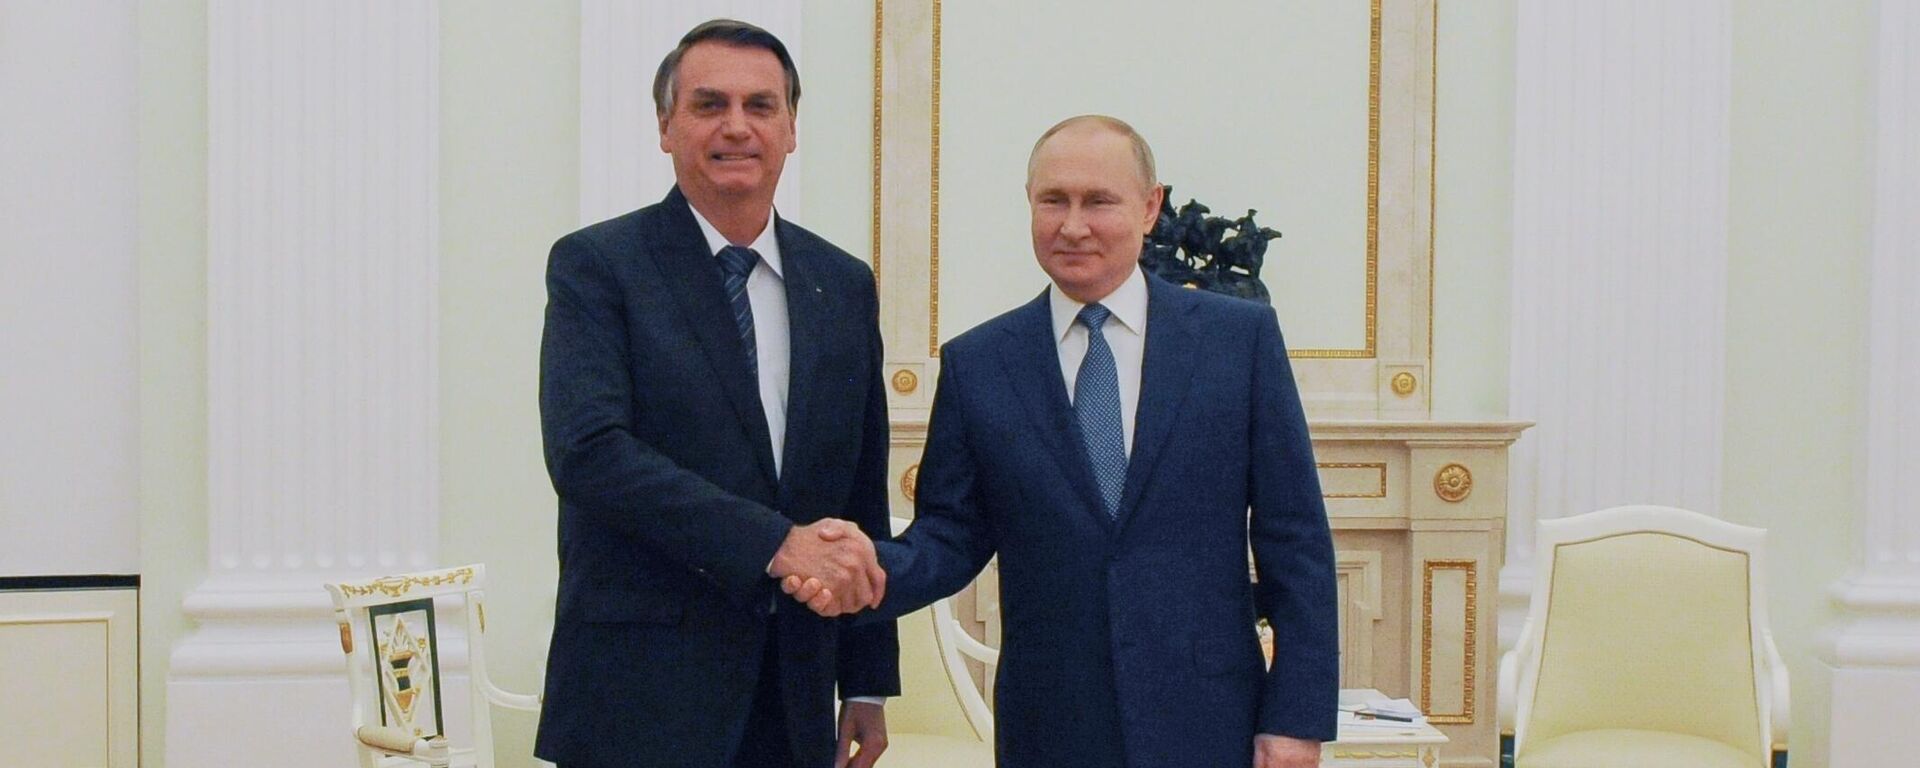 Jair Bolsonaro (à esquerda), presidente do Brasil, e Vladimir Putin, presidente da Rússia, durante encontro oficial no Kremlin. Rússia, 16 de fevereiro de 2022 - Sputnik Brasil, 1920, 16.02.2022